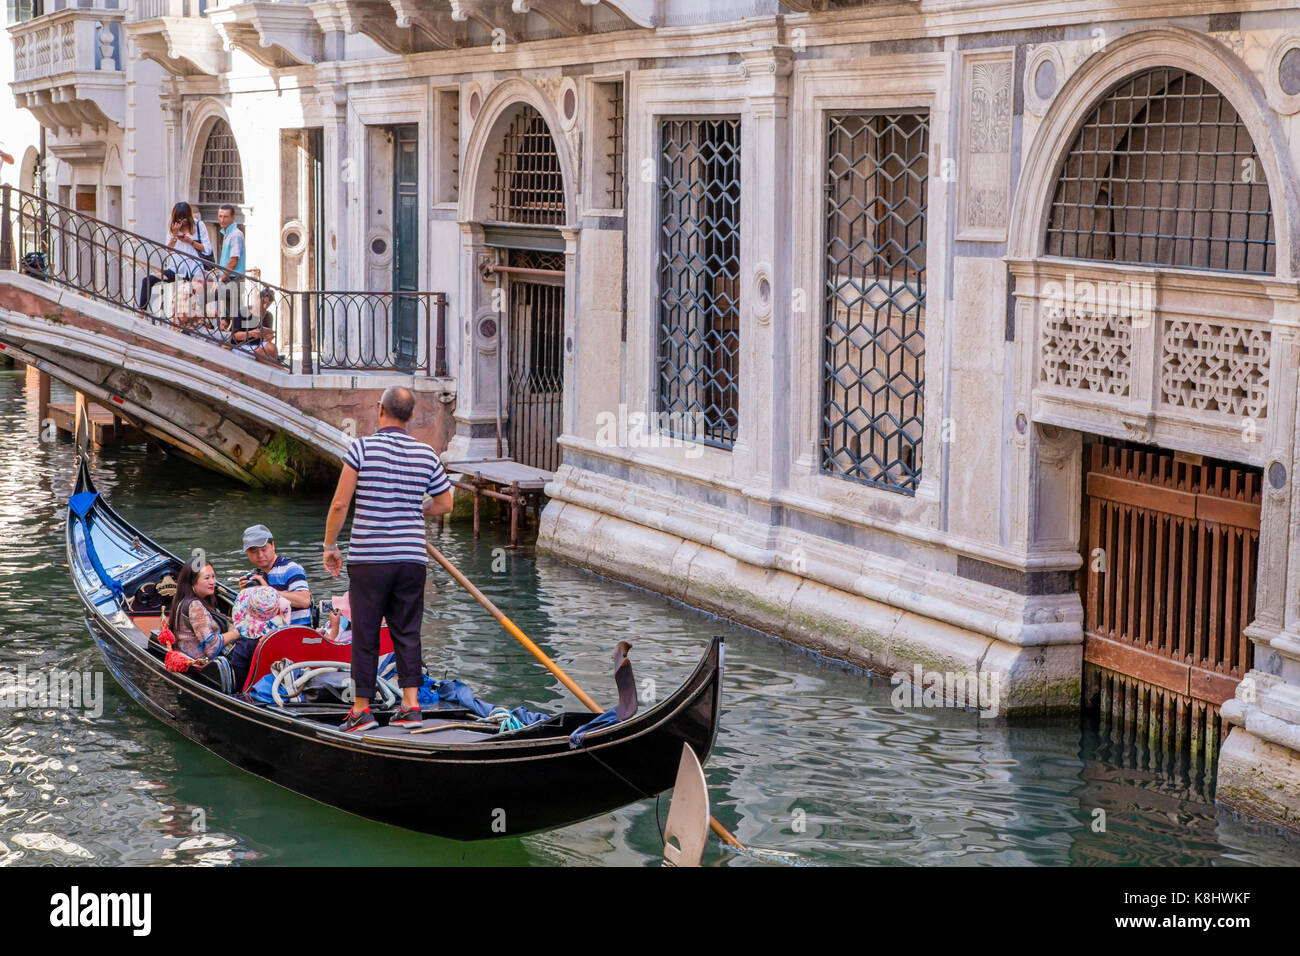 Venice canals and gondola, Italy Stock Photo